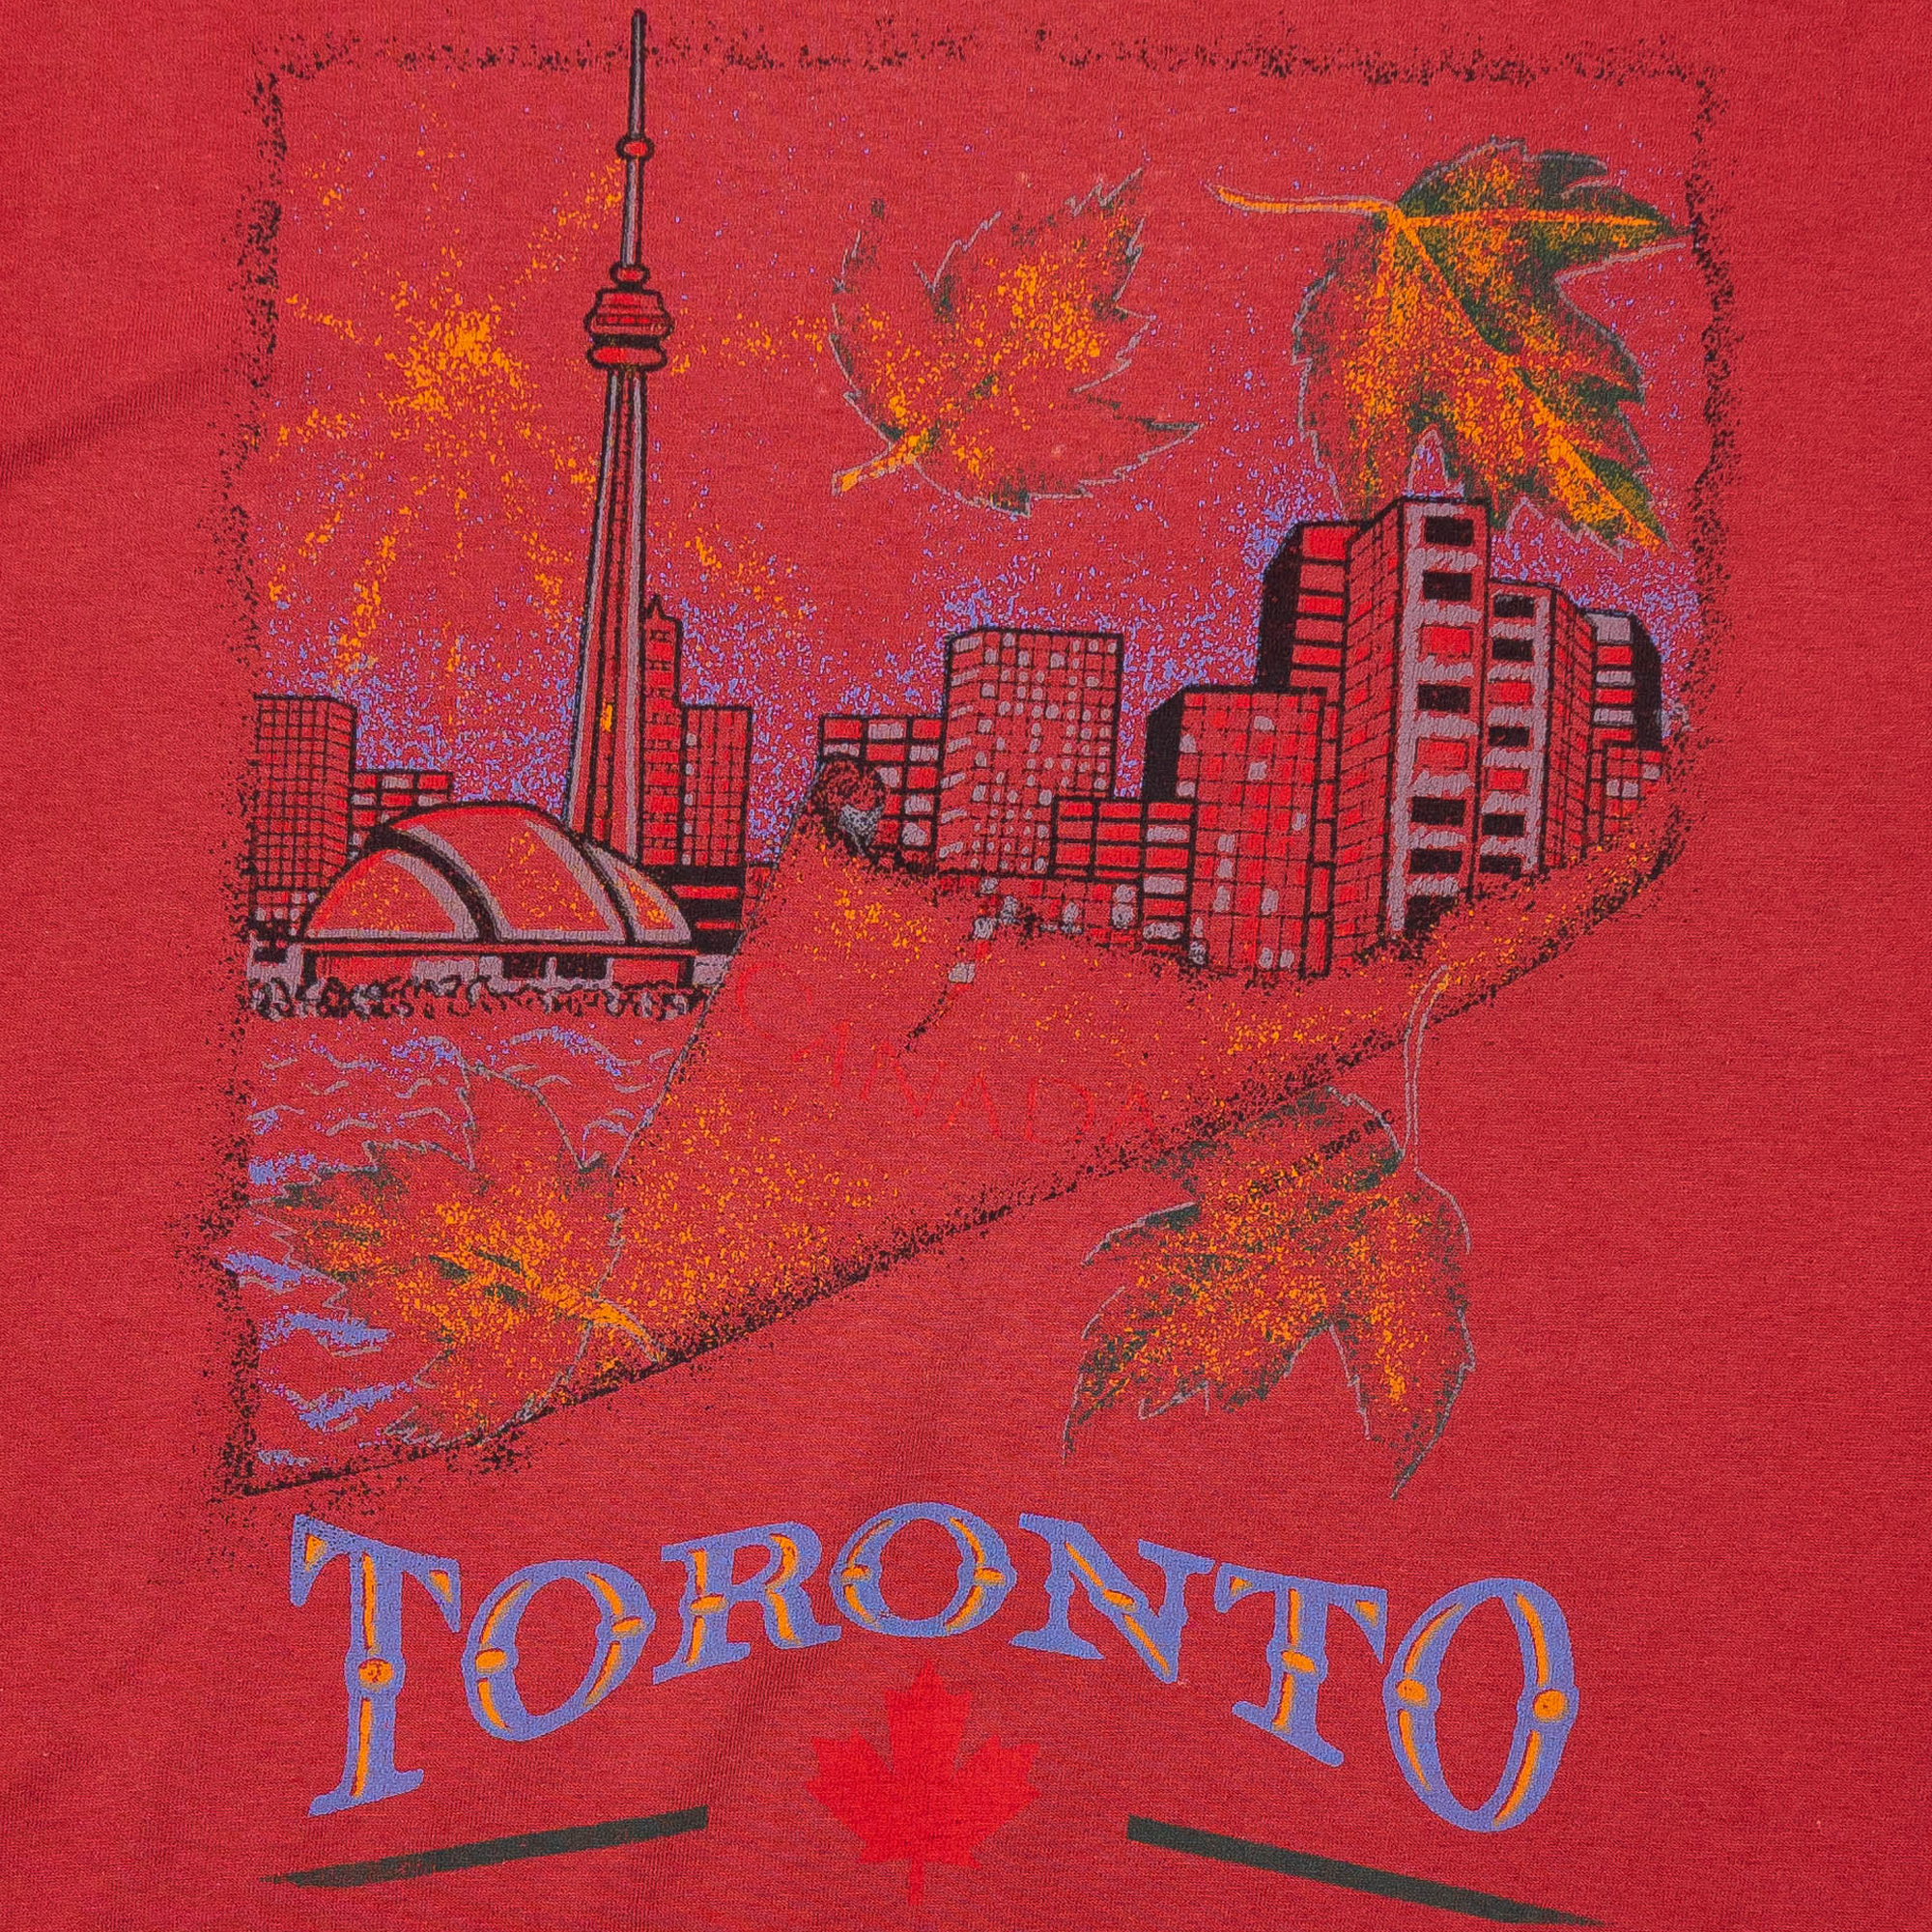 Toronto Fall Leaves 2000 Souvenir Tee Red-PLUS